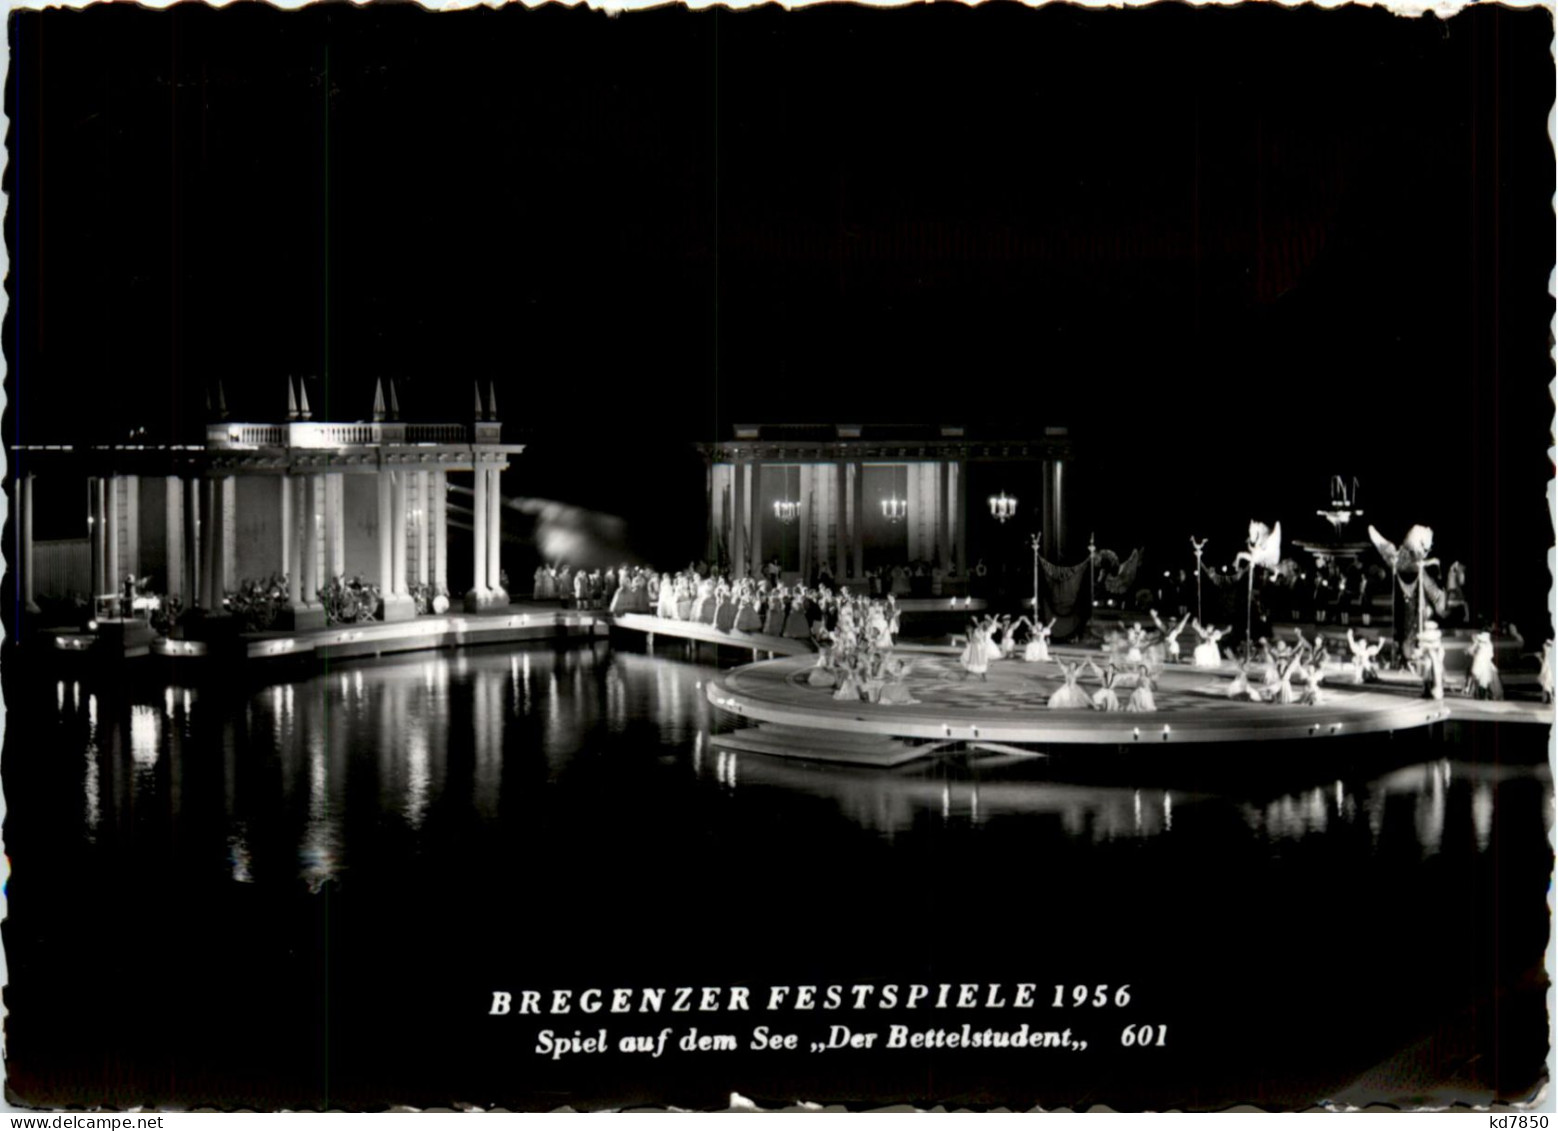 Bregenz, Festspiele, Spiel Auf Dem See, Der Bettelstudent 1956 - Bregenz